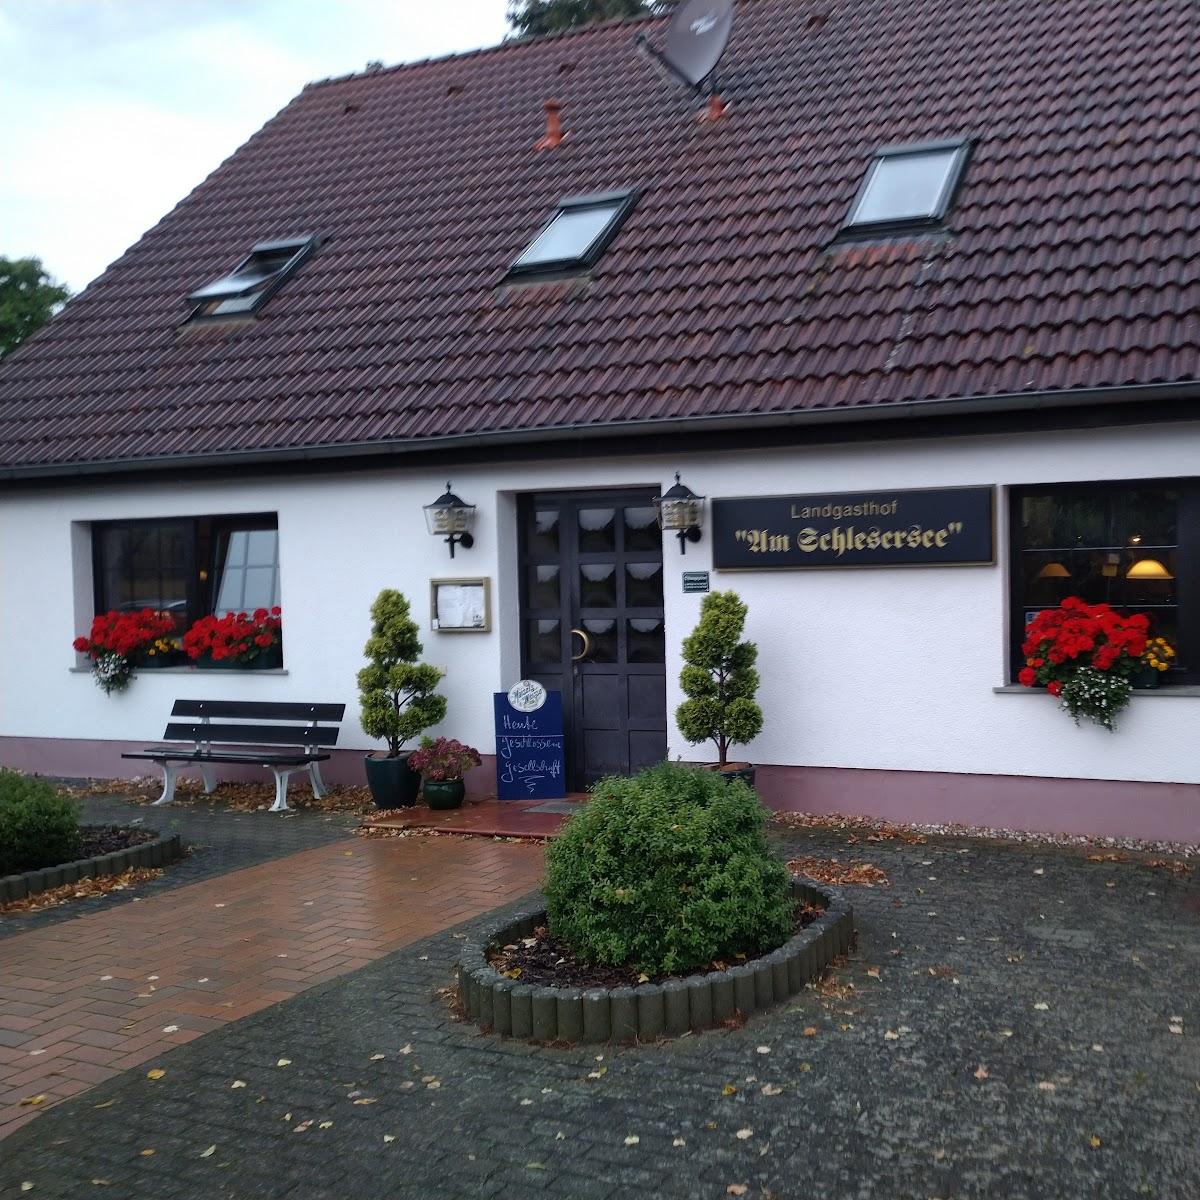 Restaurant "Landgasthof am Schlesersee" in Carpin